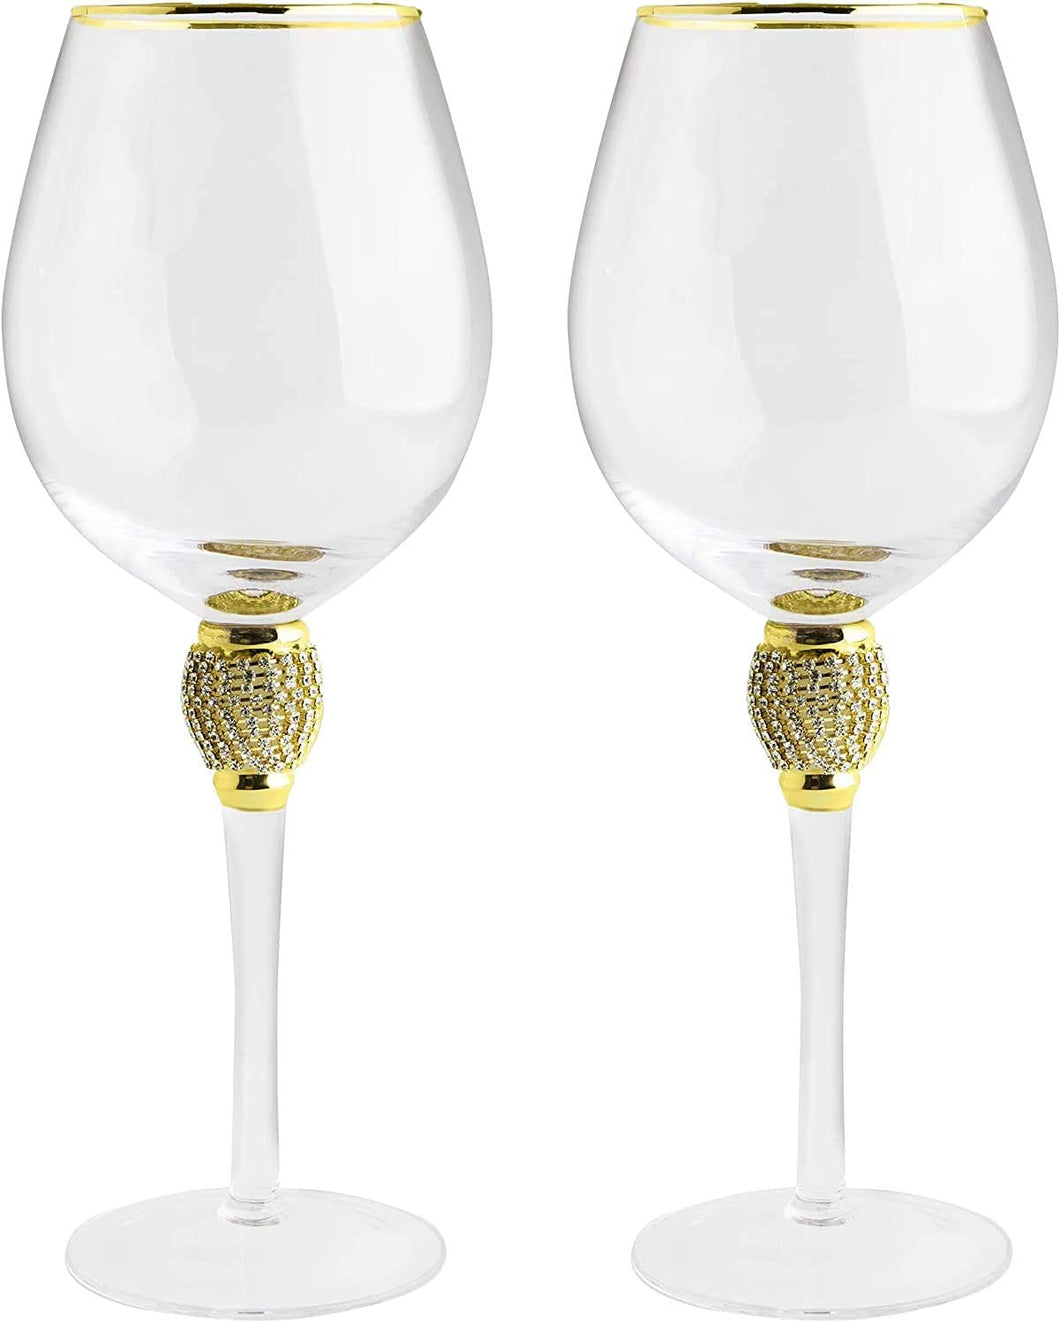 Large Diamond Wine Glasses, 10